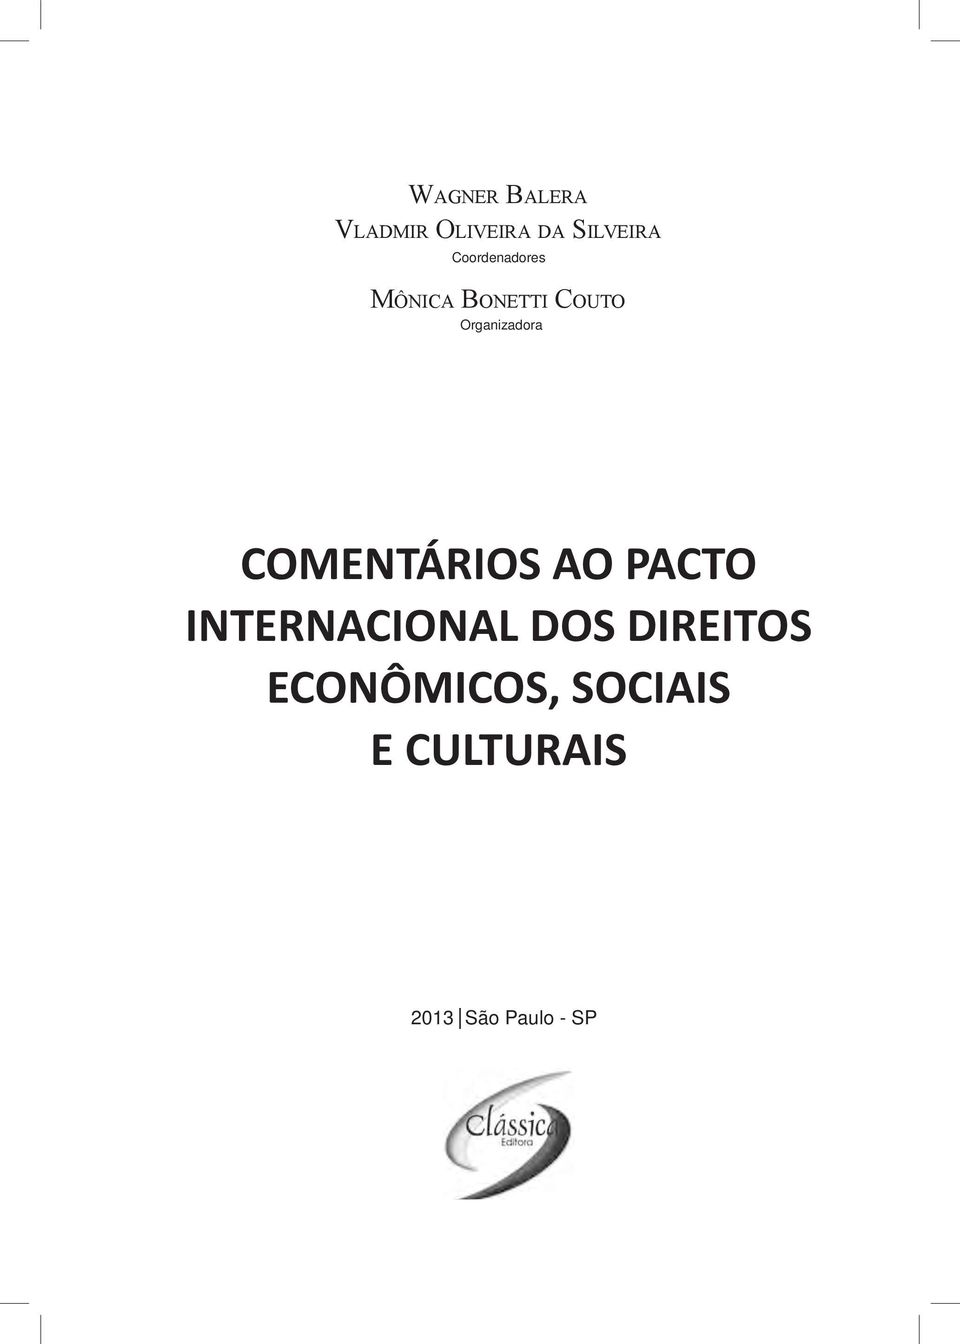 COMENTÁRIOS AO PACTO INTERNACIONAL DOS DIREITOS